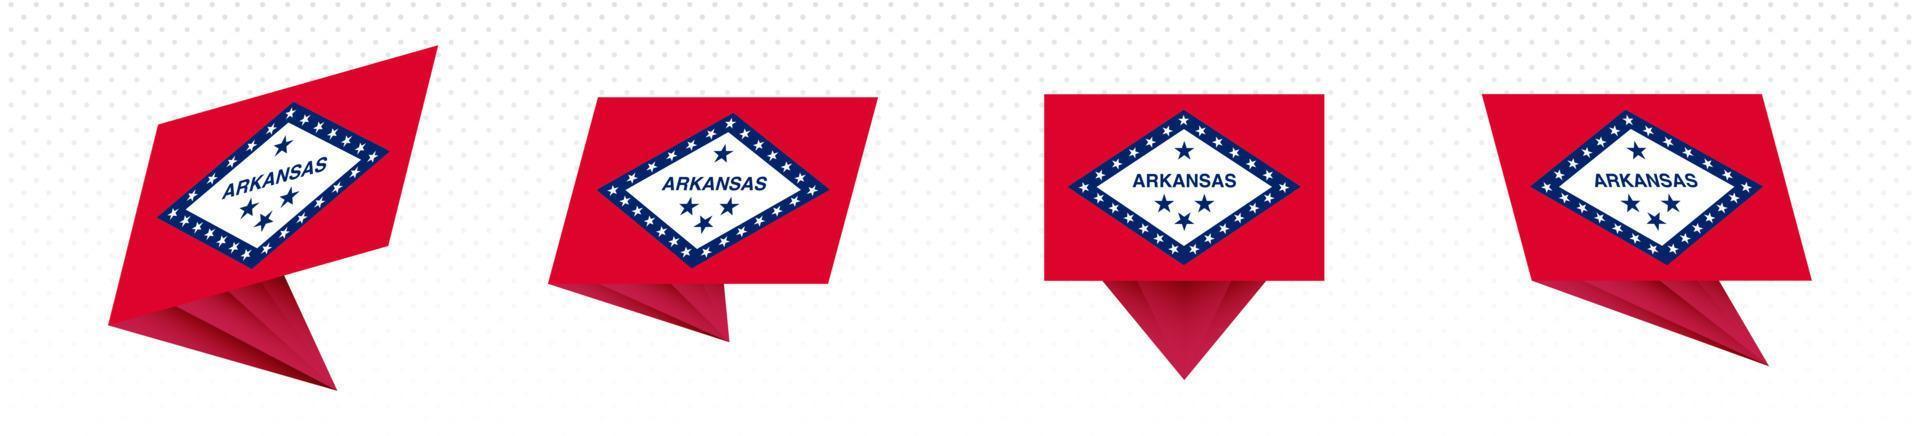 Flagge des US-Bundesstaates Arkansas in modernem abstraktem Design, Flaggensatz. vektor